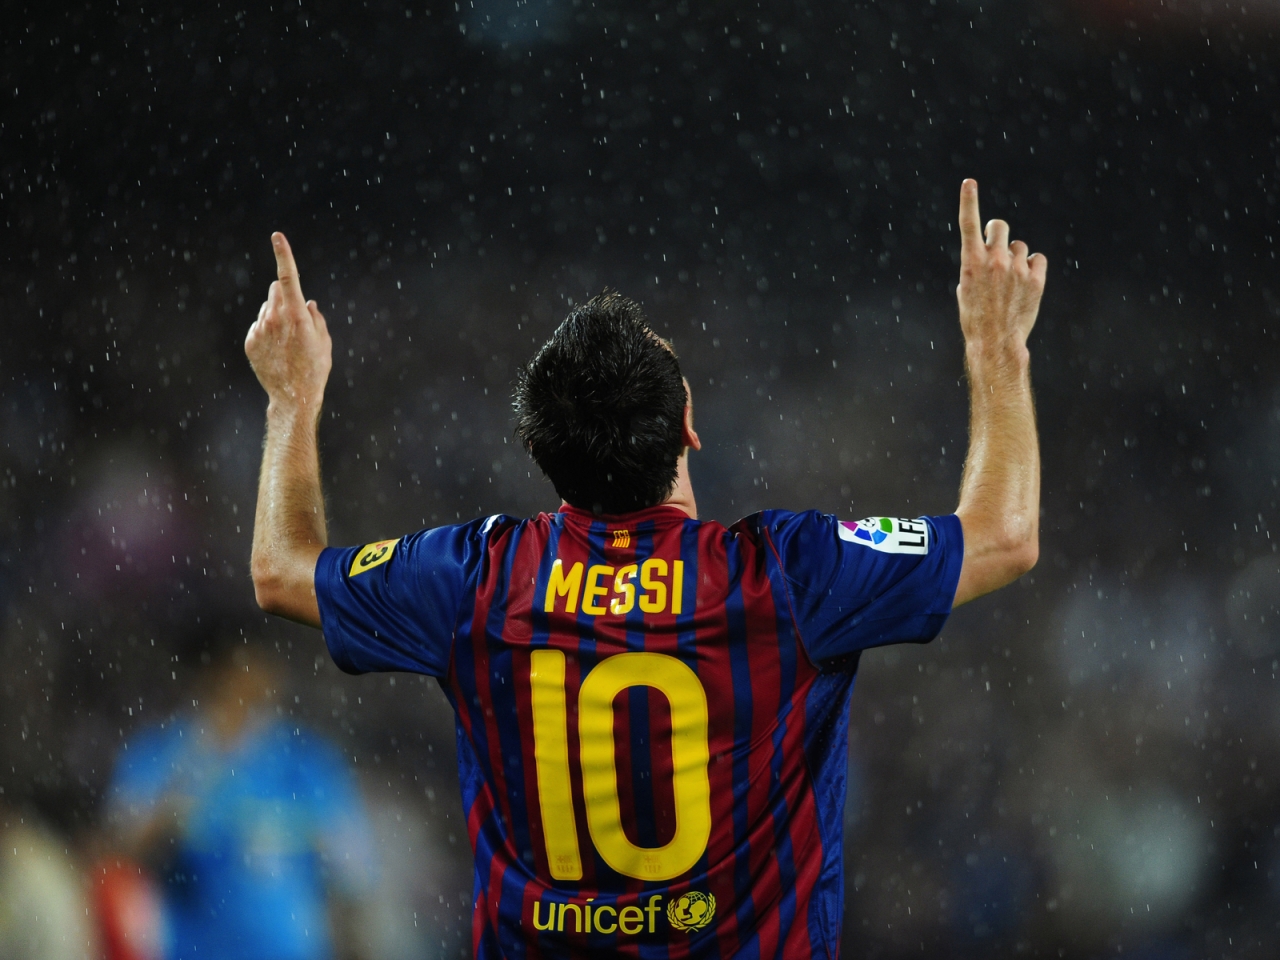 Lionel Messi in Rain for 1280 x 960 resolution